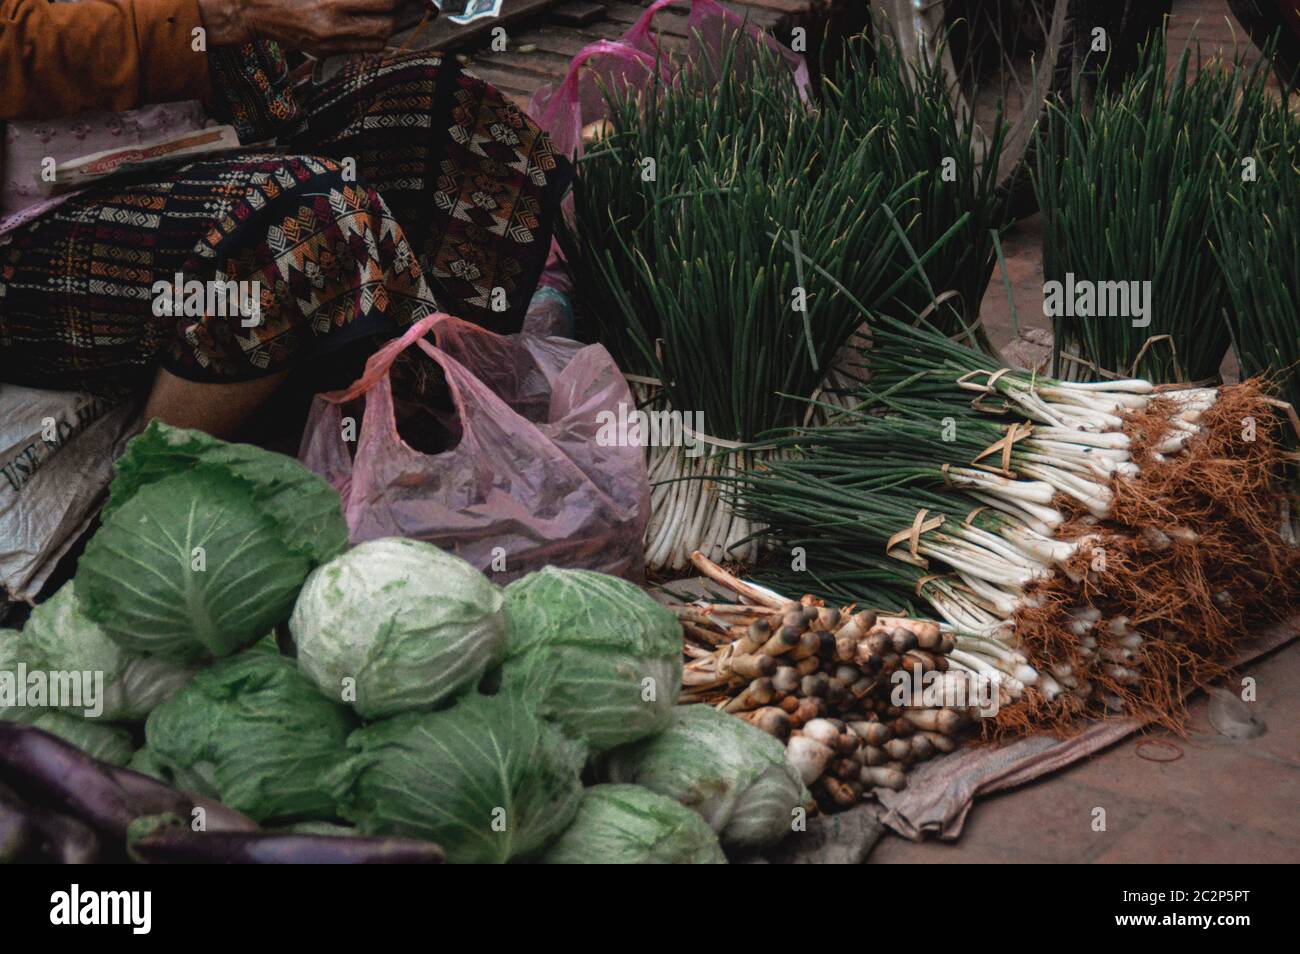 Vendeur vendant des légumes à Luang Prabang marché matinal au Laos qui montre la vie, la culture et les moyens de subsistance de la population locale Banque D'Images